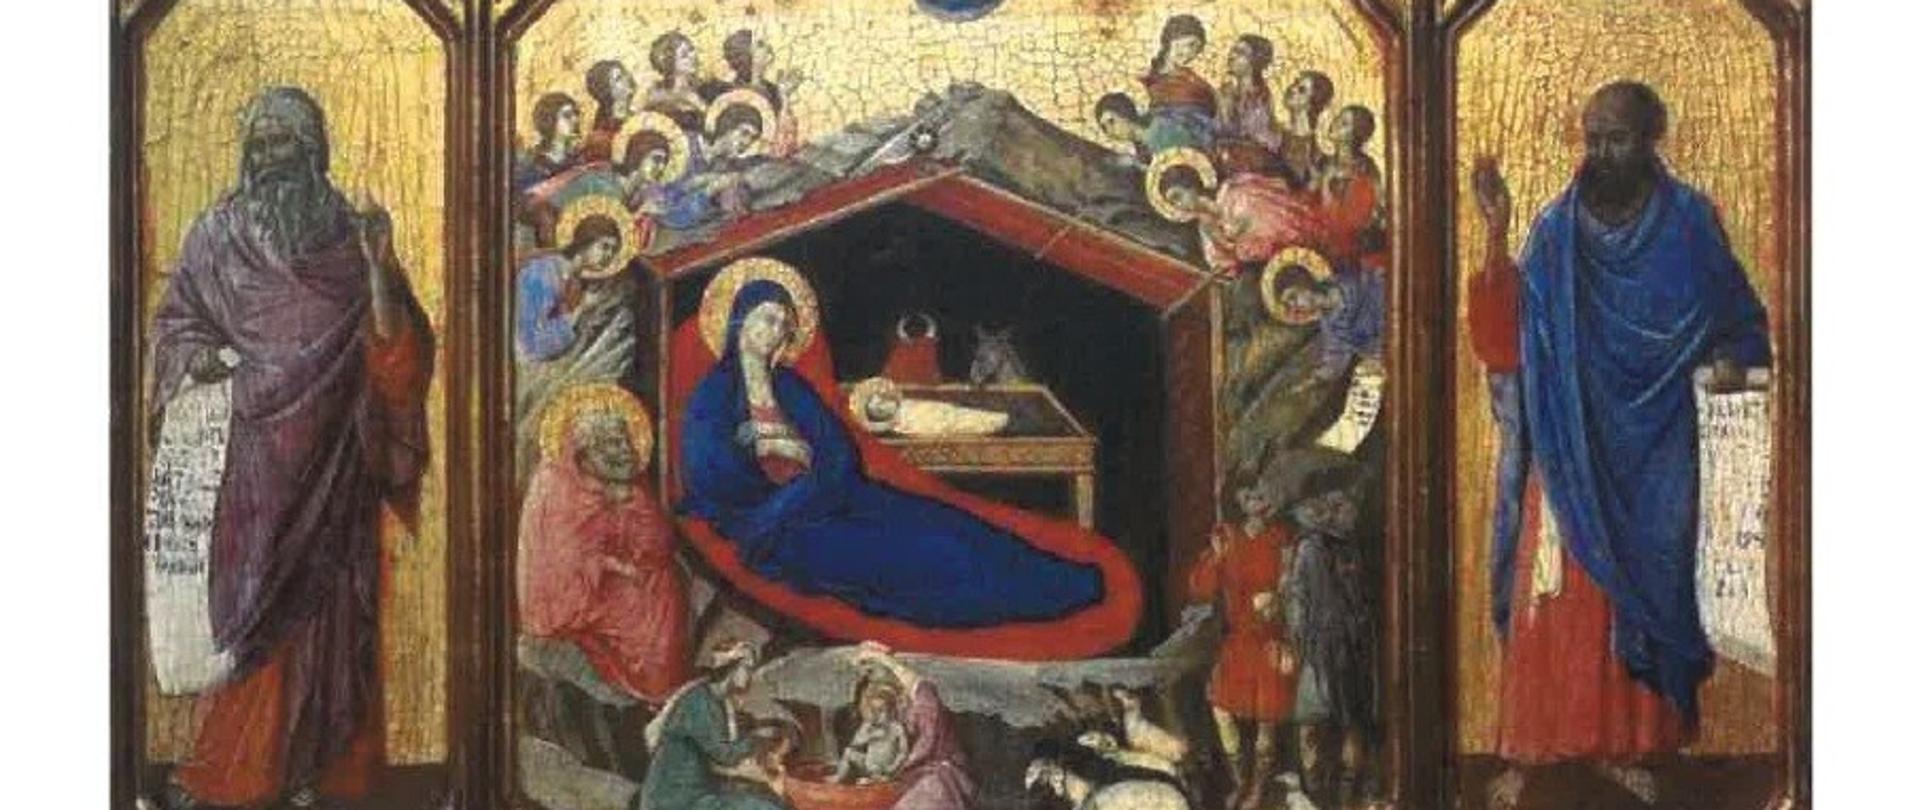 Obraz włoskiego malarza Duccio di Buoninsegna Narodzenie z prorokami Izajaszem i Ezechielem. Środkowa scena tego tryptyku pokazuje narodzenie Jezusa. W symbolicznie namalowanej stajence leży Dzieciątko ze swą Matką. Na bocznych skrzydłach widzimy natomiast dwóch proroków: Izajasza (z lewej) i Ezechiela. 